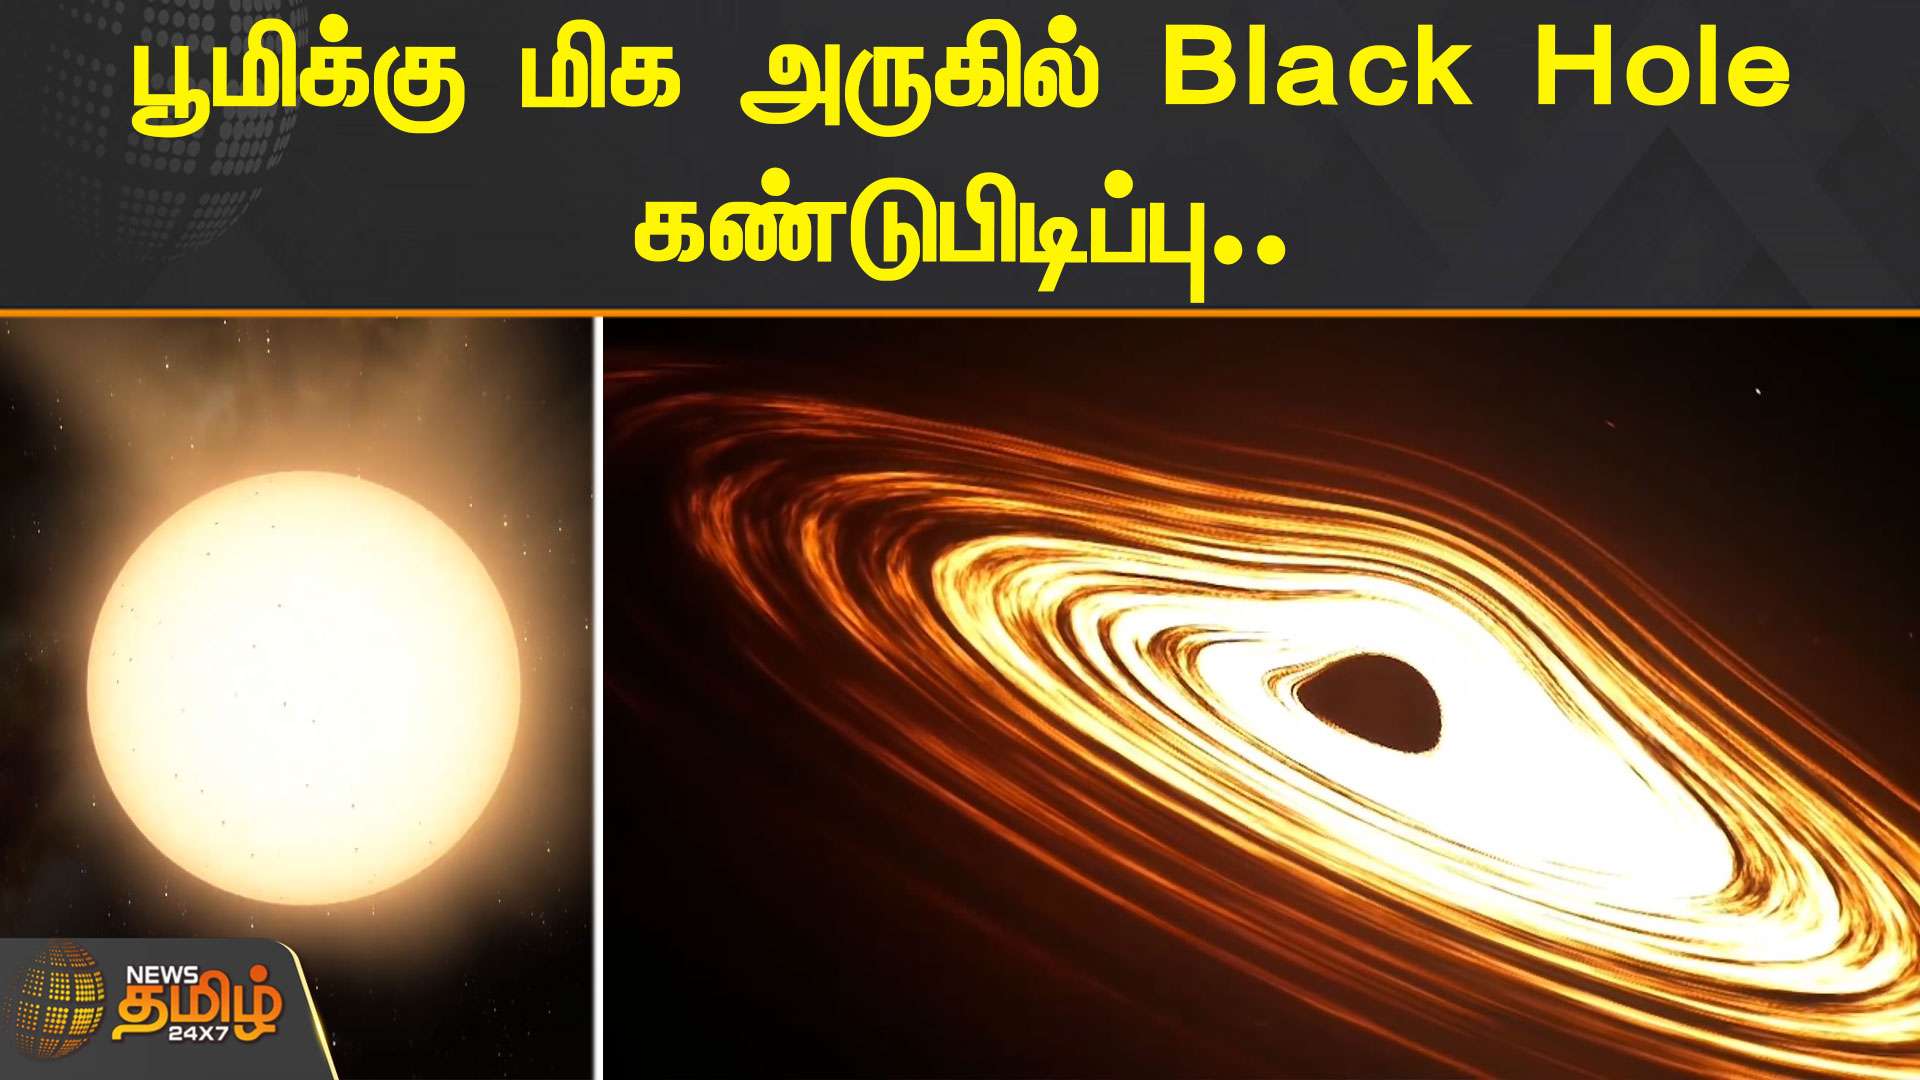 பூமிக்கு மிக அருகில் Black Hole கண்டுபிடிப்பு | Blackhole